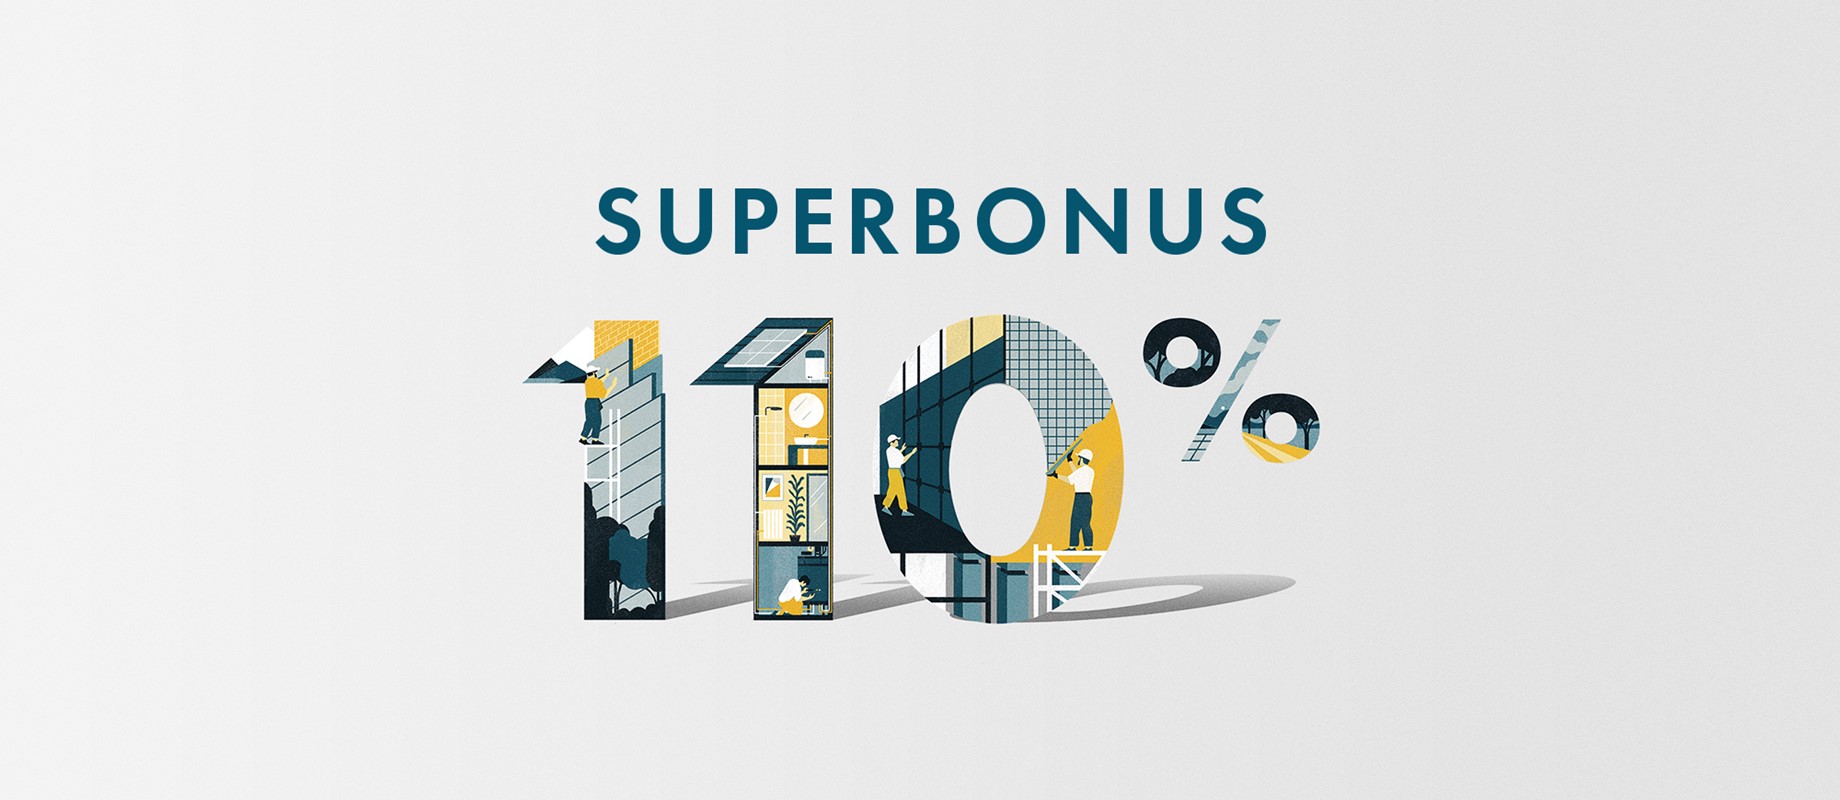 Approfitta del Superbonus 110% per la ristrutturazione della tua casa 